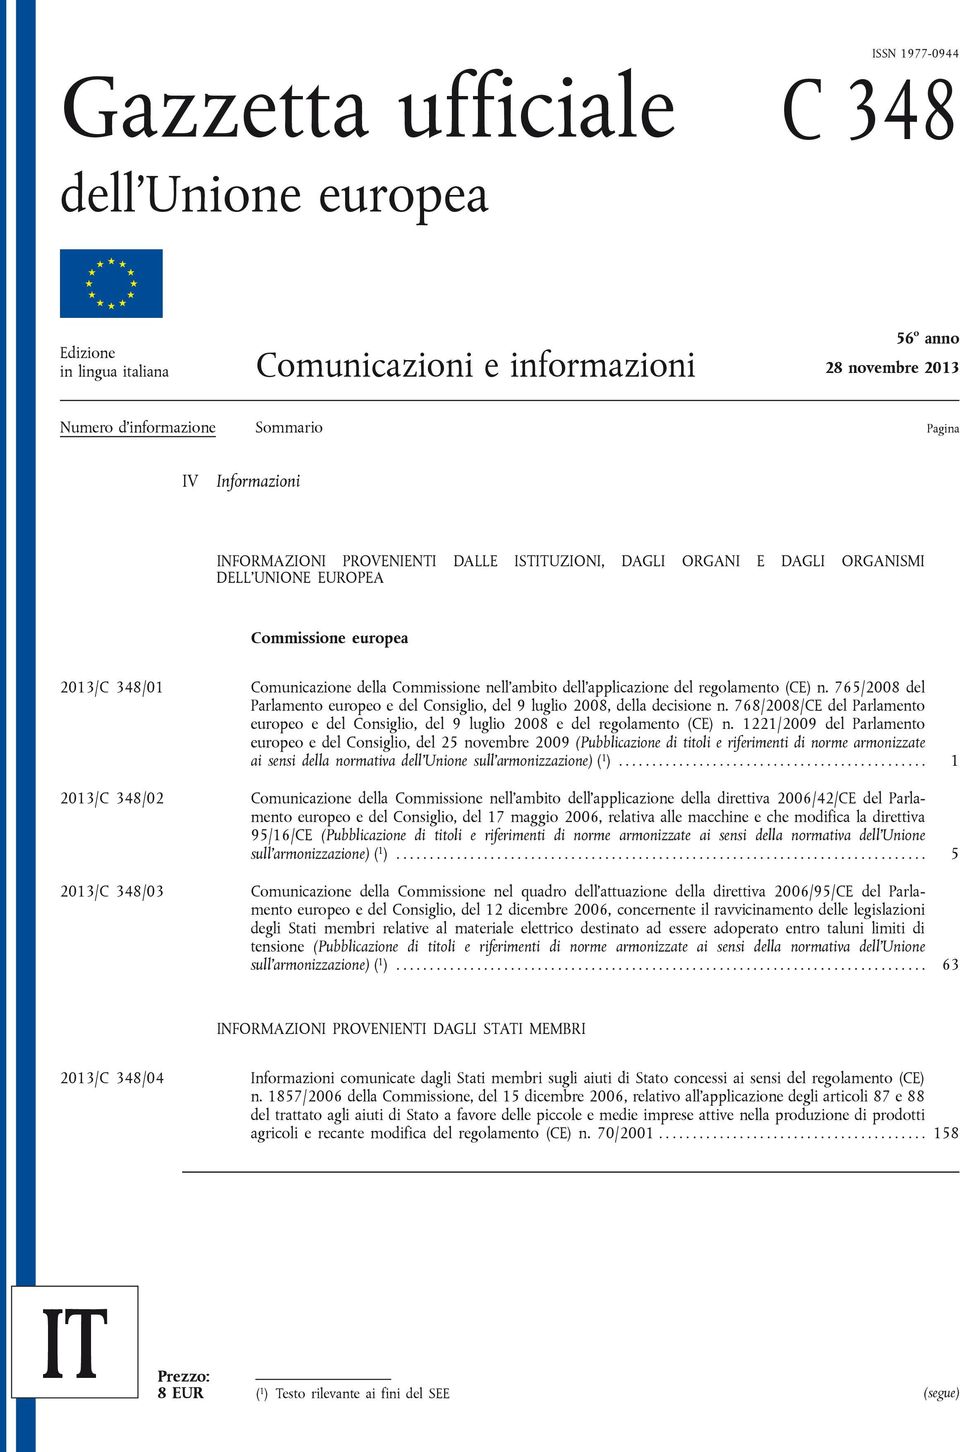 regolamento (CE) n. 765/2008 del Parlamento europeo e del Consiglio, del 9 luglio 2008, della decisione n.